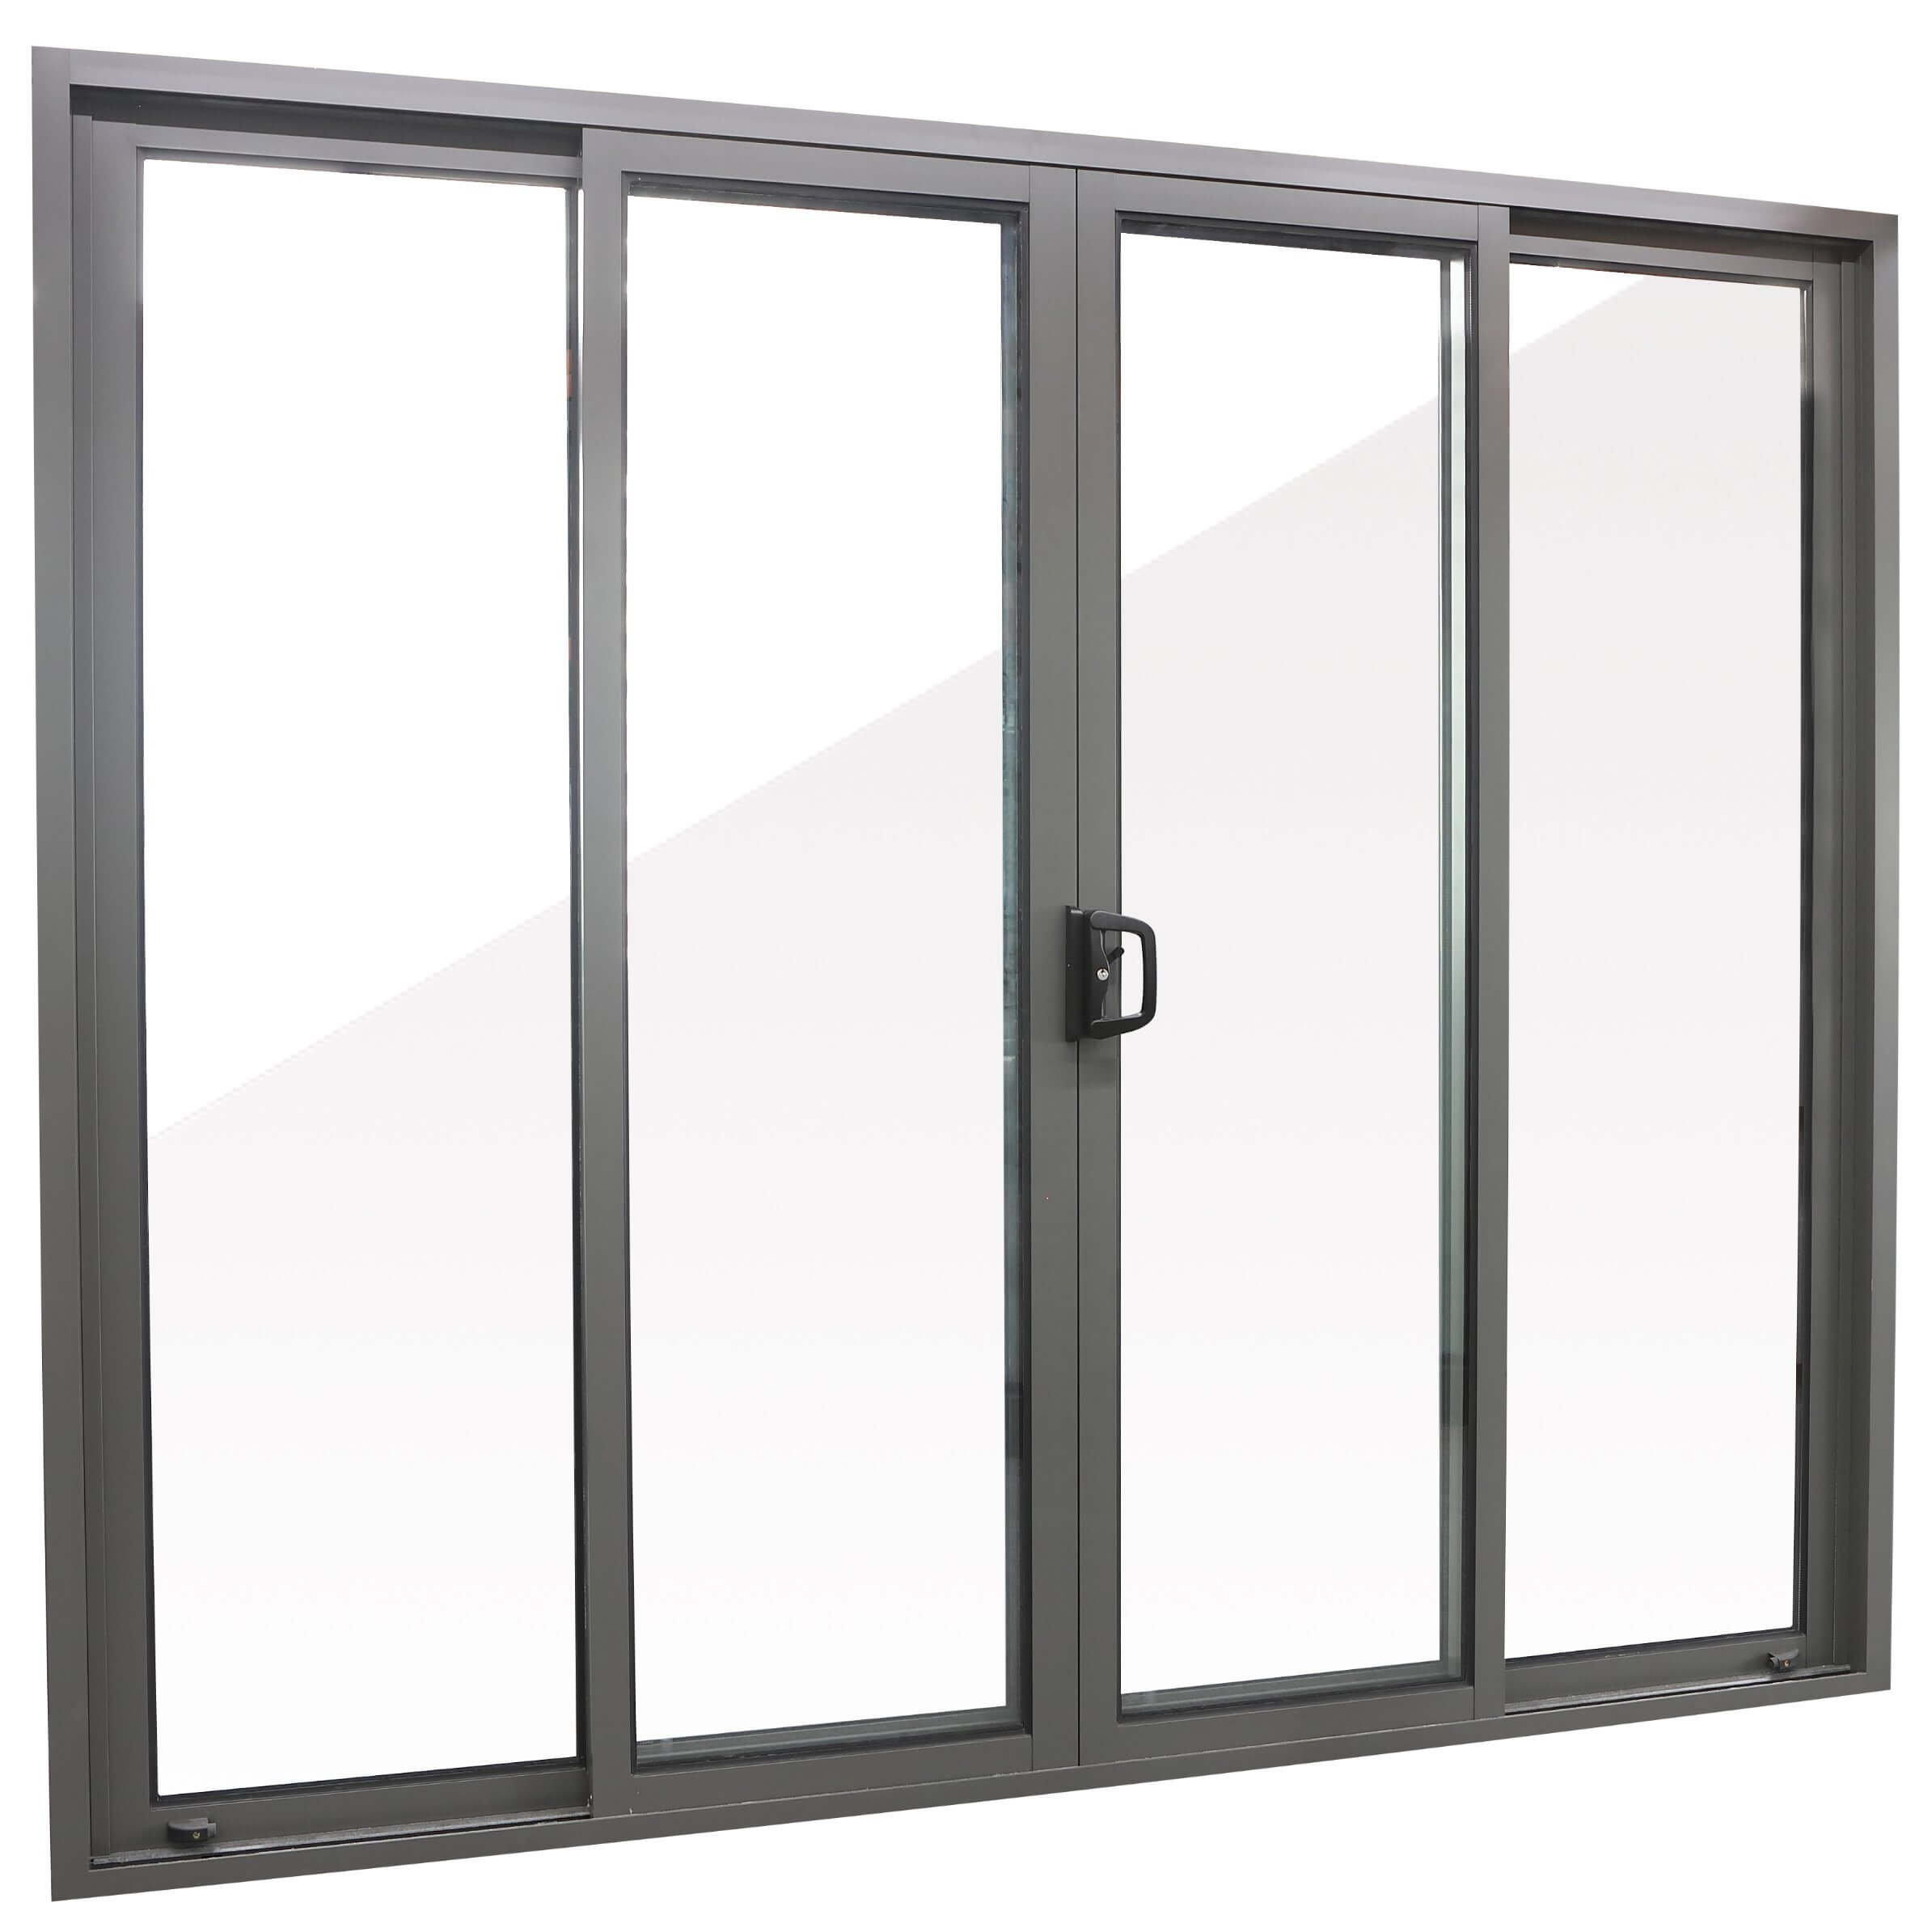 ORIDOW - Aluminum sliding door